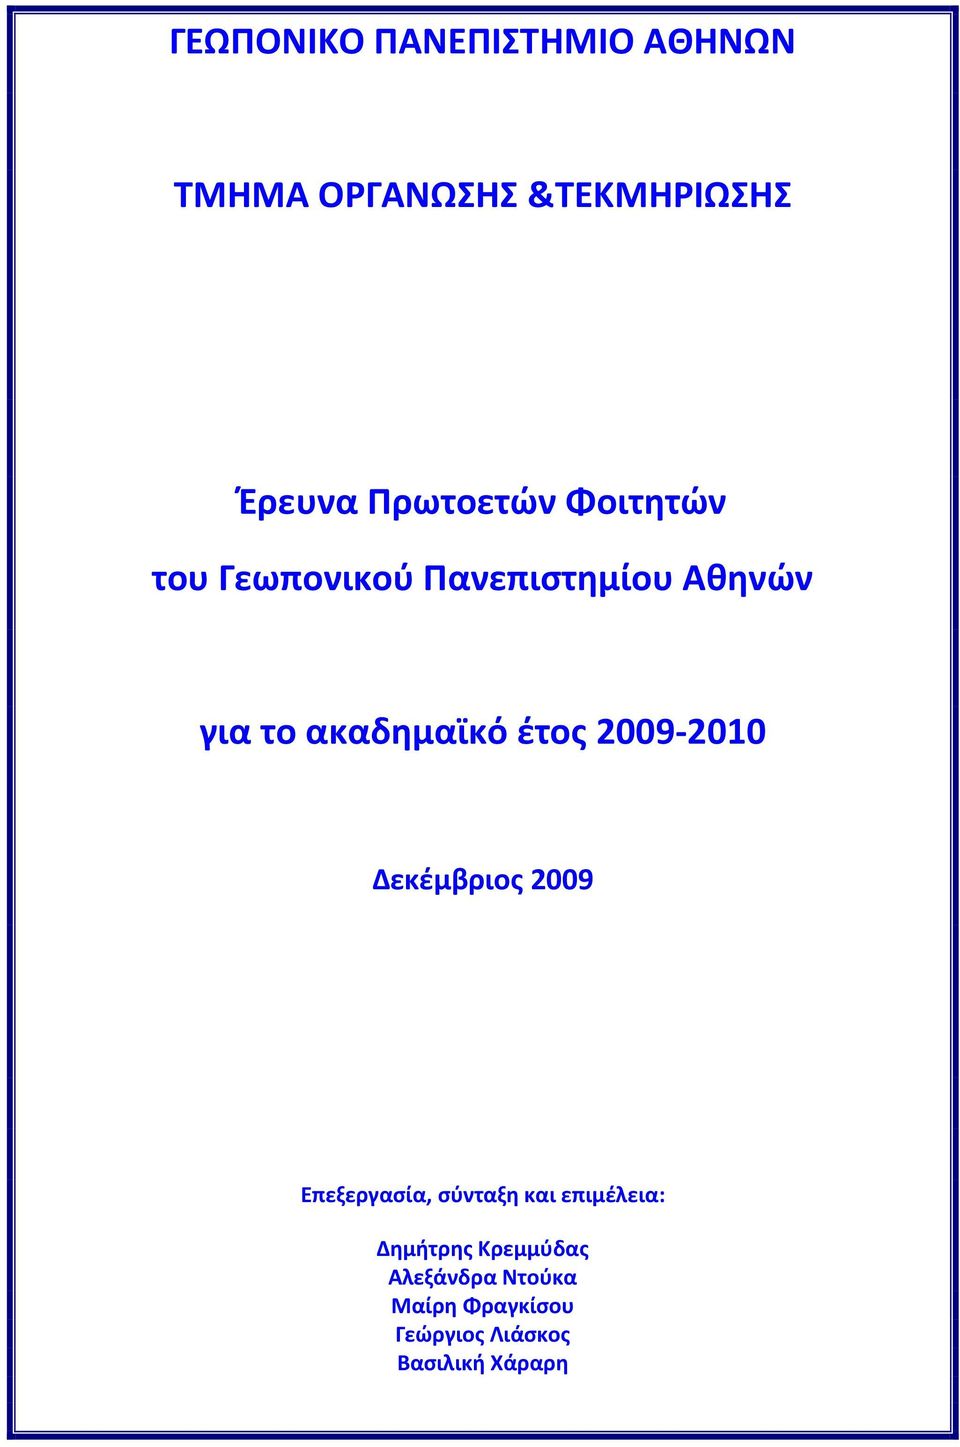 έτος 2009 2010 Δεκέμβριος 2009 Επεξεργασία, σύνταξη και επιμέλεια: